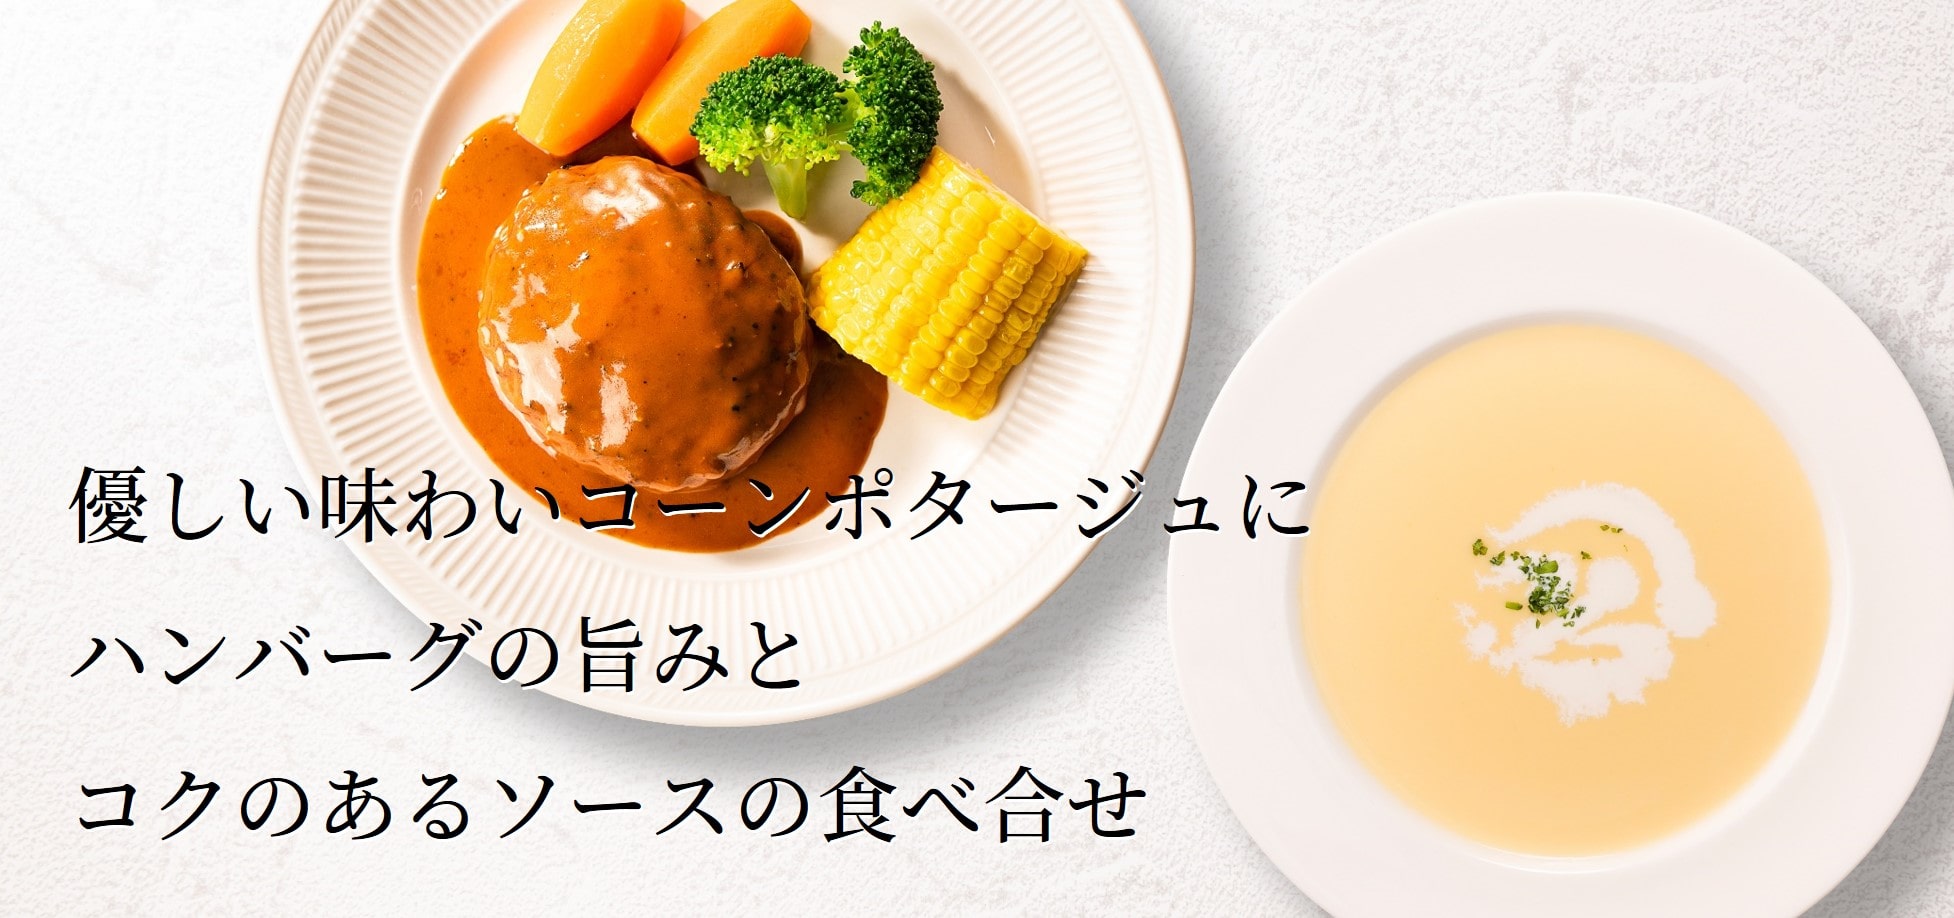 黒毛和牛と黒豚のハンバーグ〜ブラウンバターソース〜＆コーンポタージュ